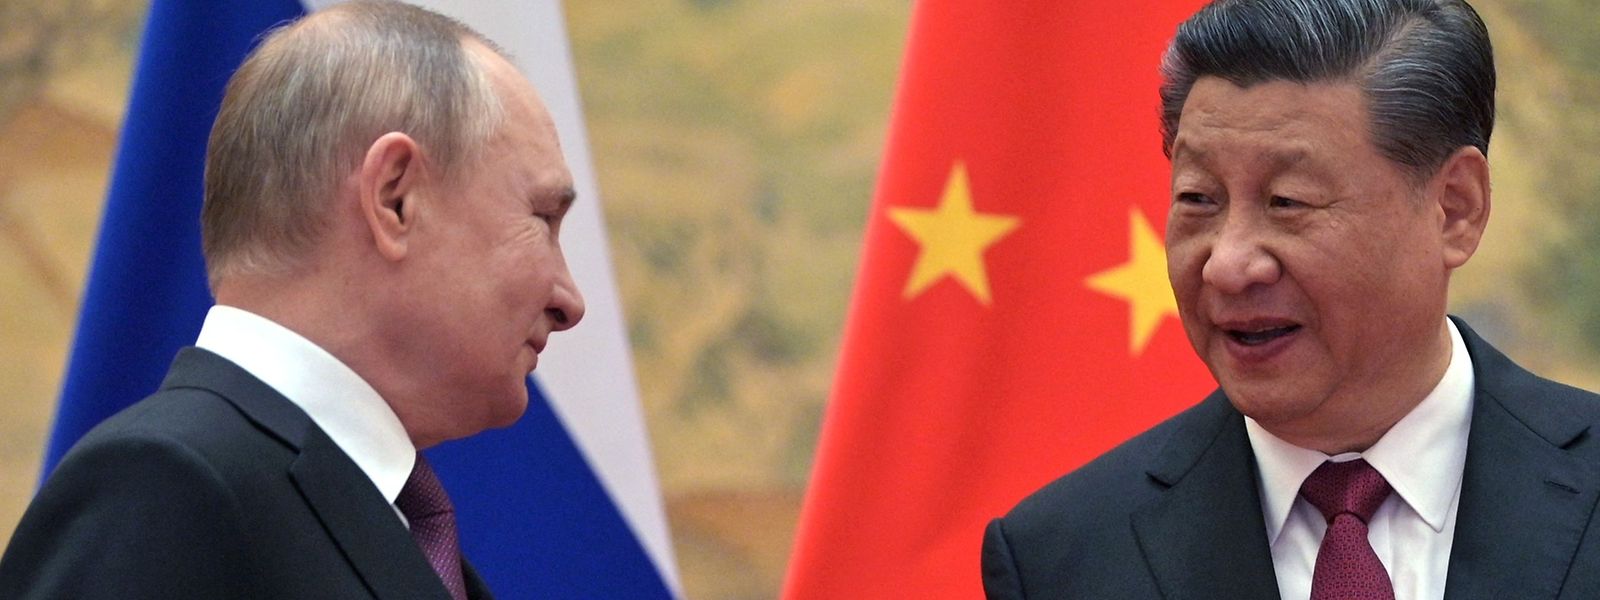 Der russische Präsident Wladimir Putin und der chinesische Präsident Xi Jinping posieren für ein Foto während ihres Treffens in Peking am 4. Februar 2022. 